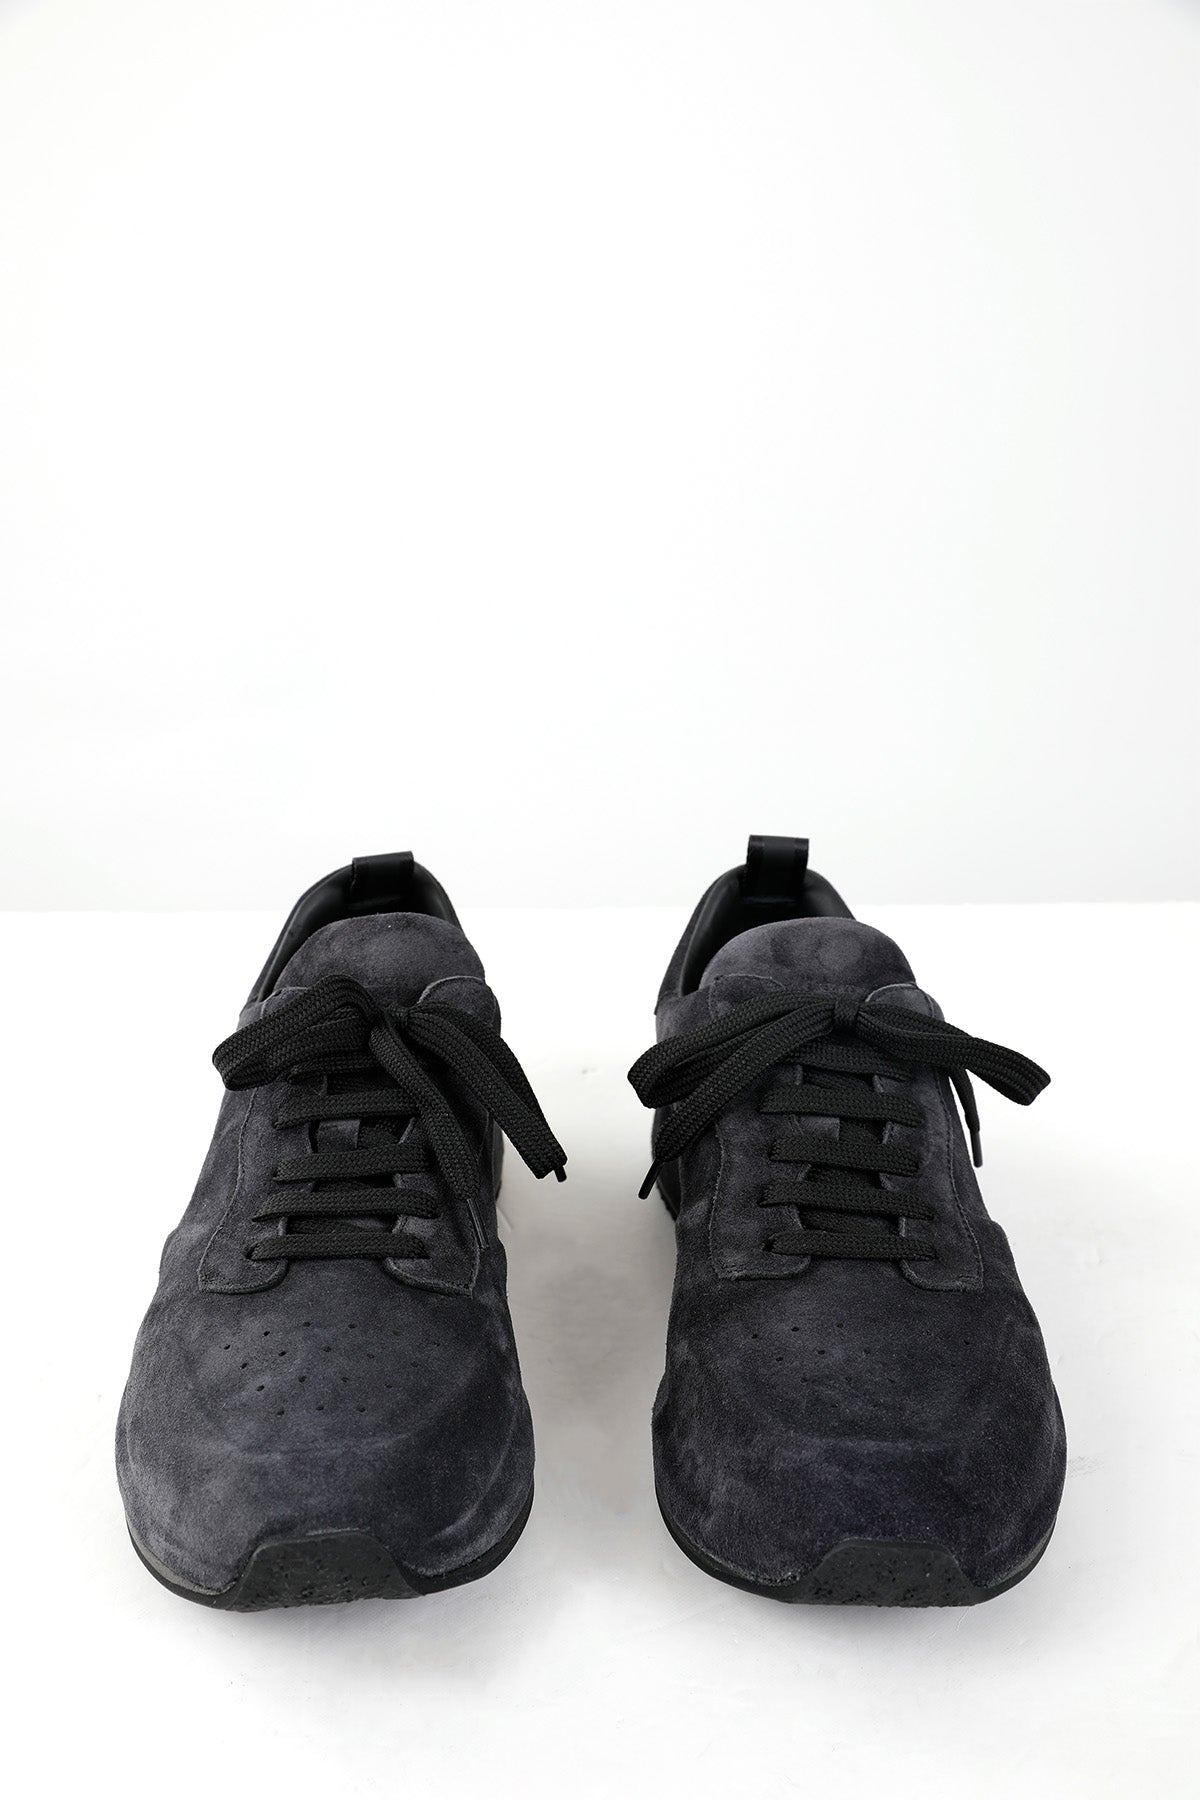 Officine Creative Race Lux Süet Deri Sneaker Ayakkabı-Libas Trendy Fashion Store